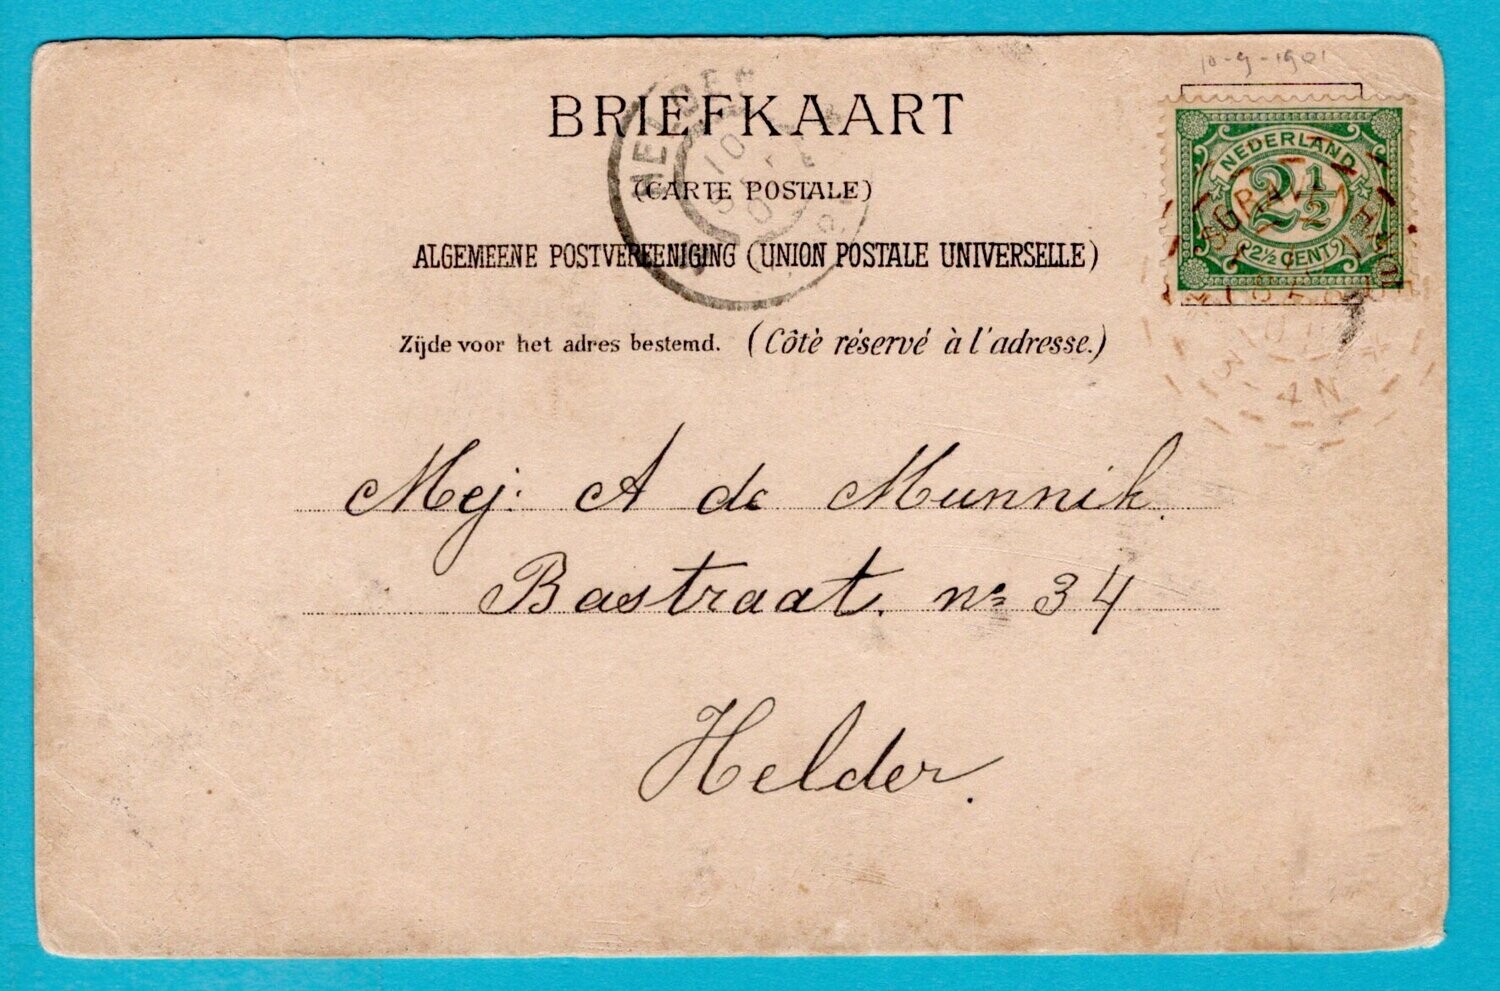 NEDERLAND prentbriefkaart 1901 's Gravenhage brandstempel